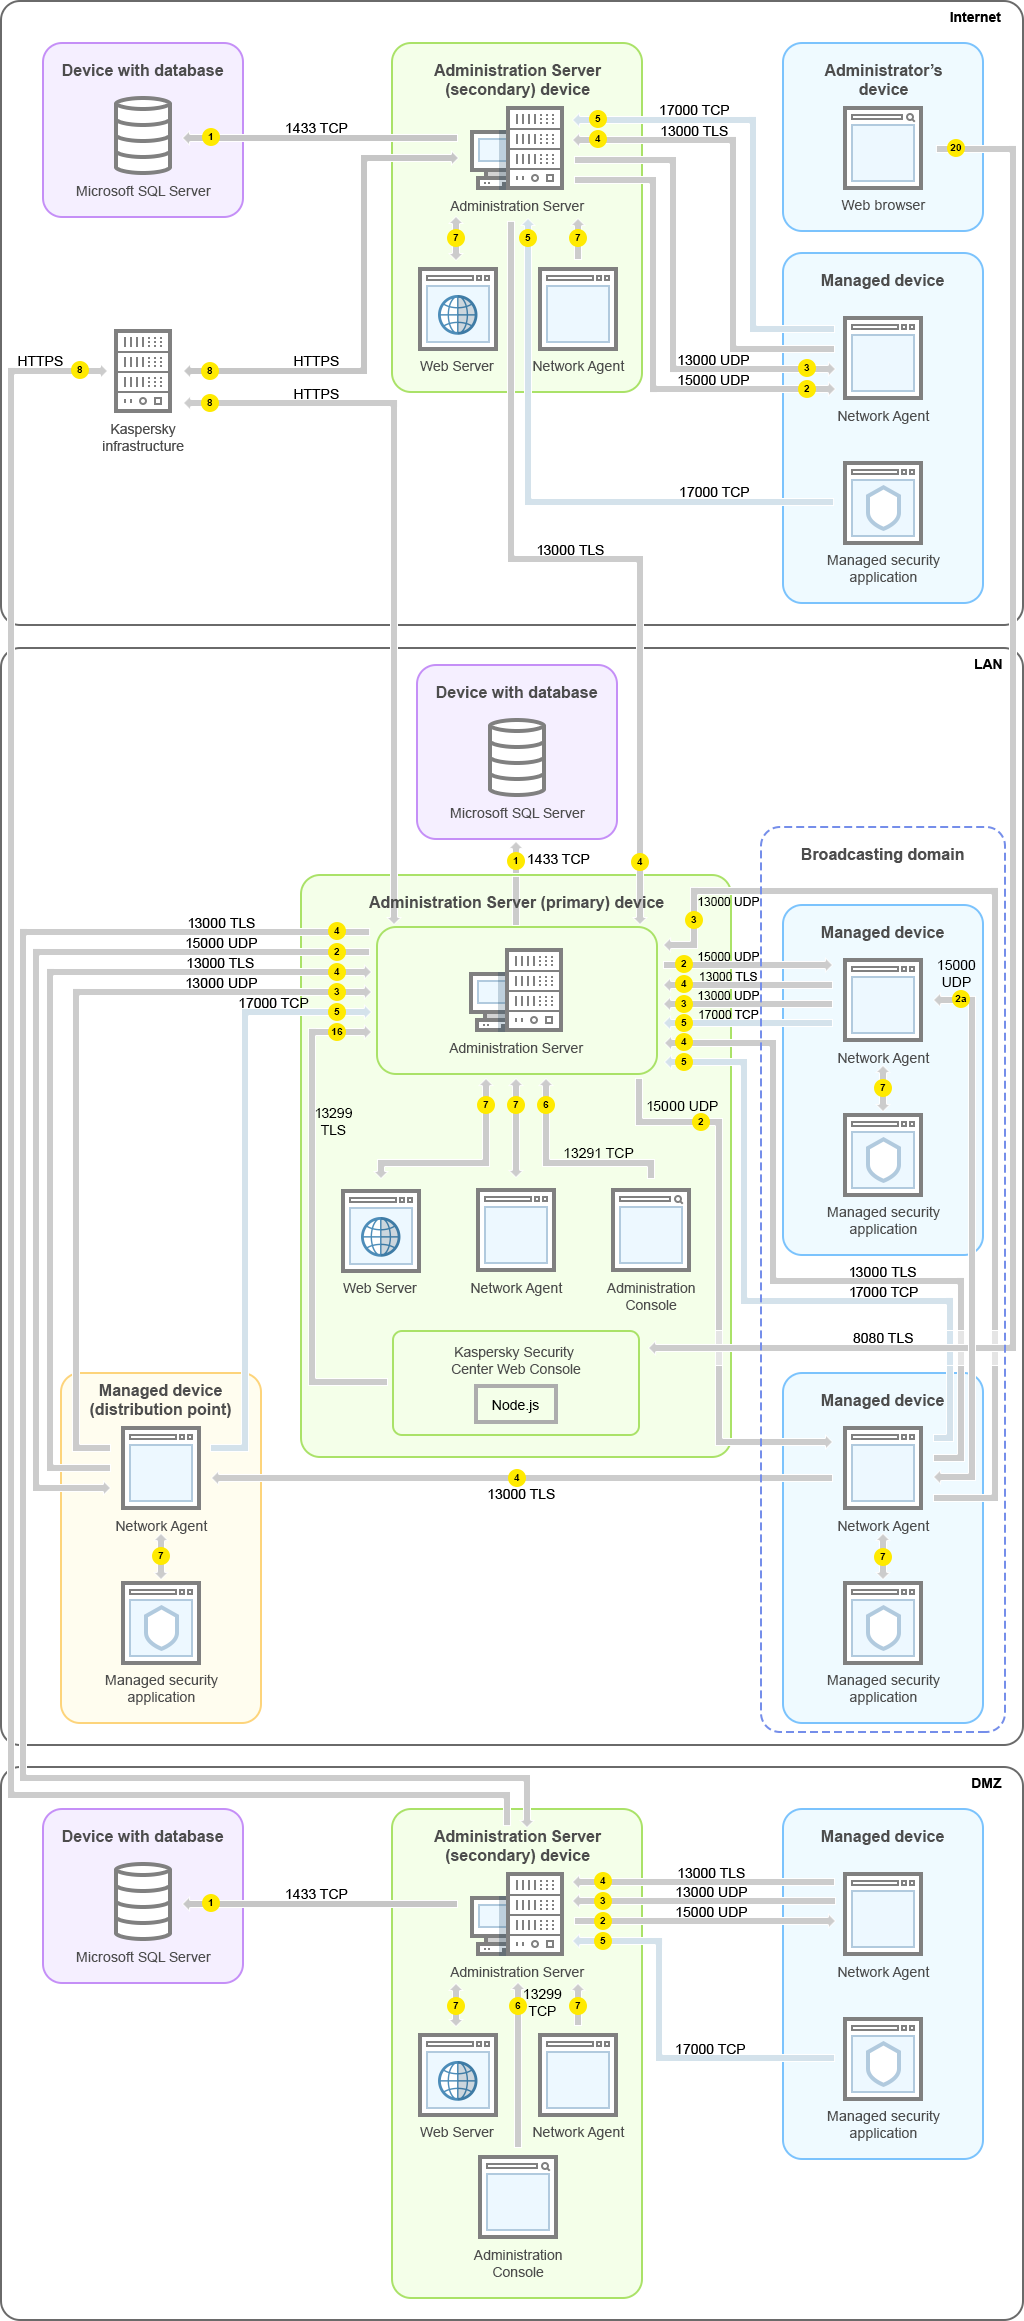 Główny Serwer administracyjny i jego zarządzane urządzenia znajdują się w sieci LAN, drugorzędny Serwer administracyjny i zarządzane przez niego urządzenia znajdują się w strefie DMZ, inny drugorzędny Serwer administracyjny, jego zarządzane urządzenia i urządzenie administratora są dostępne przez Internet.